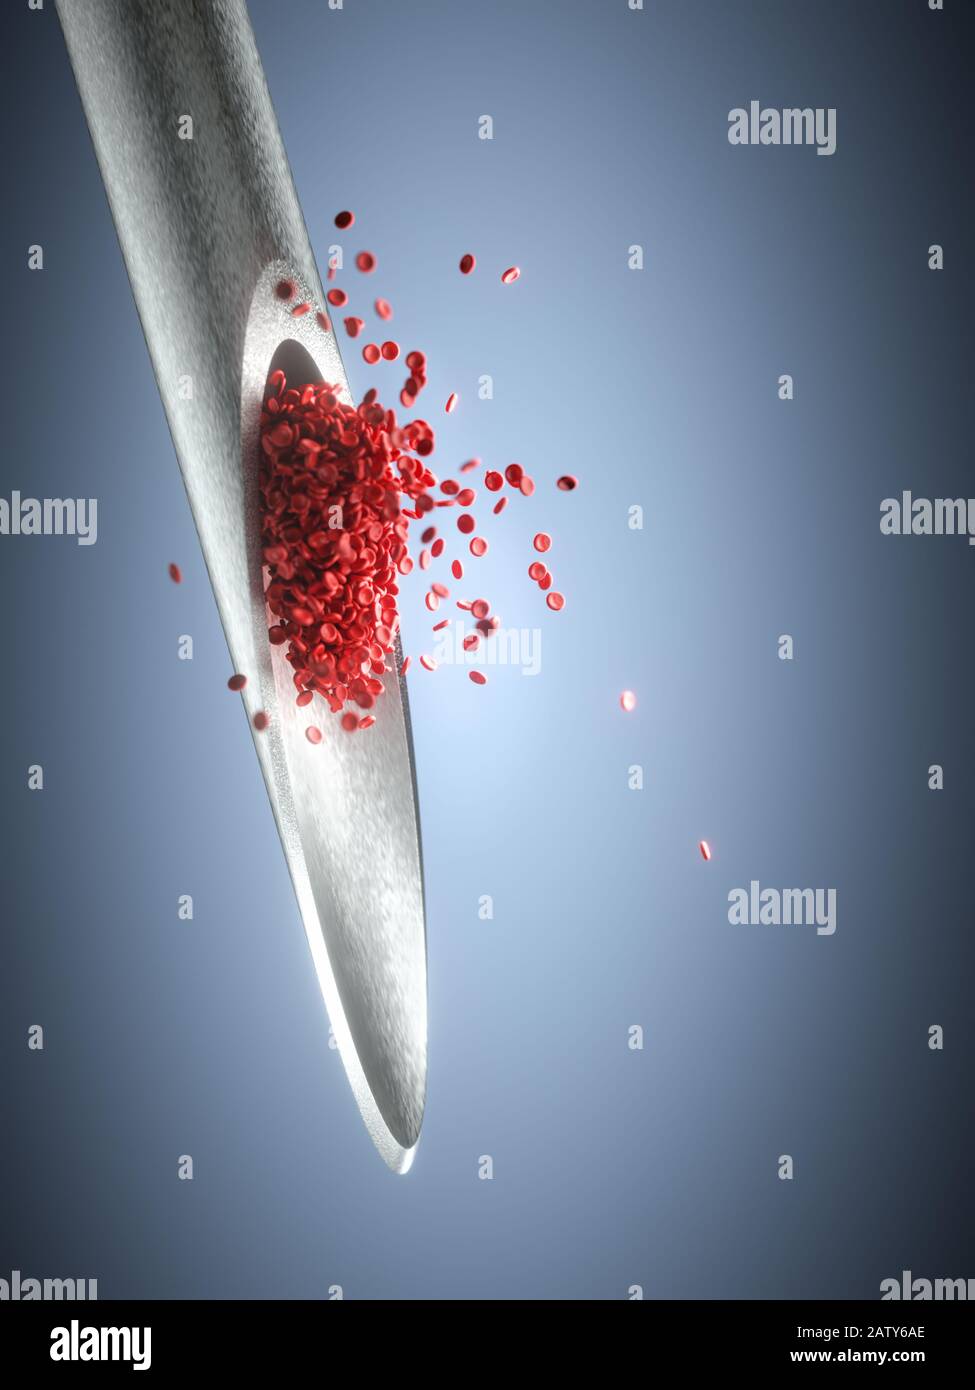 Aiguille d'injection avec globules rouges dépassant de la pointe. Illustration tridimensionnelle, image conceptuelle de la médecine et des études scientifiques. Banque D'Images